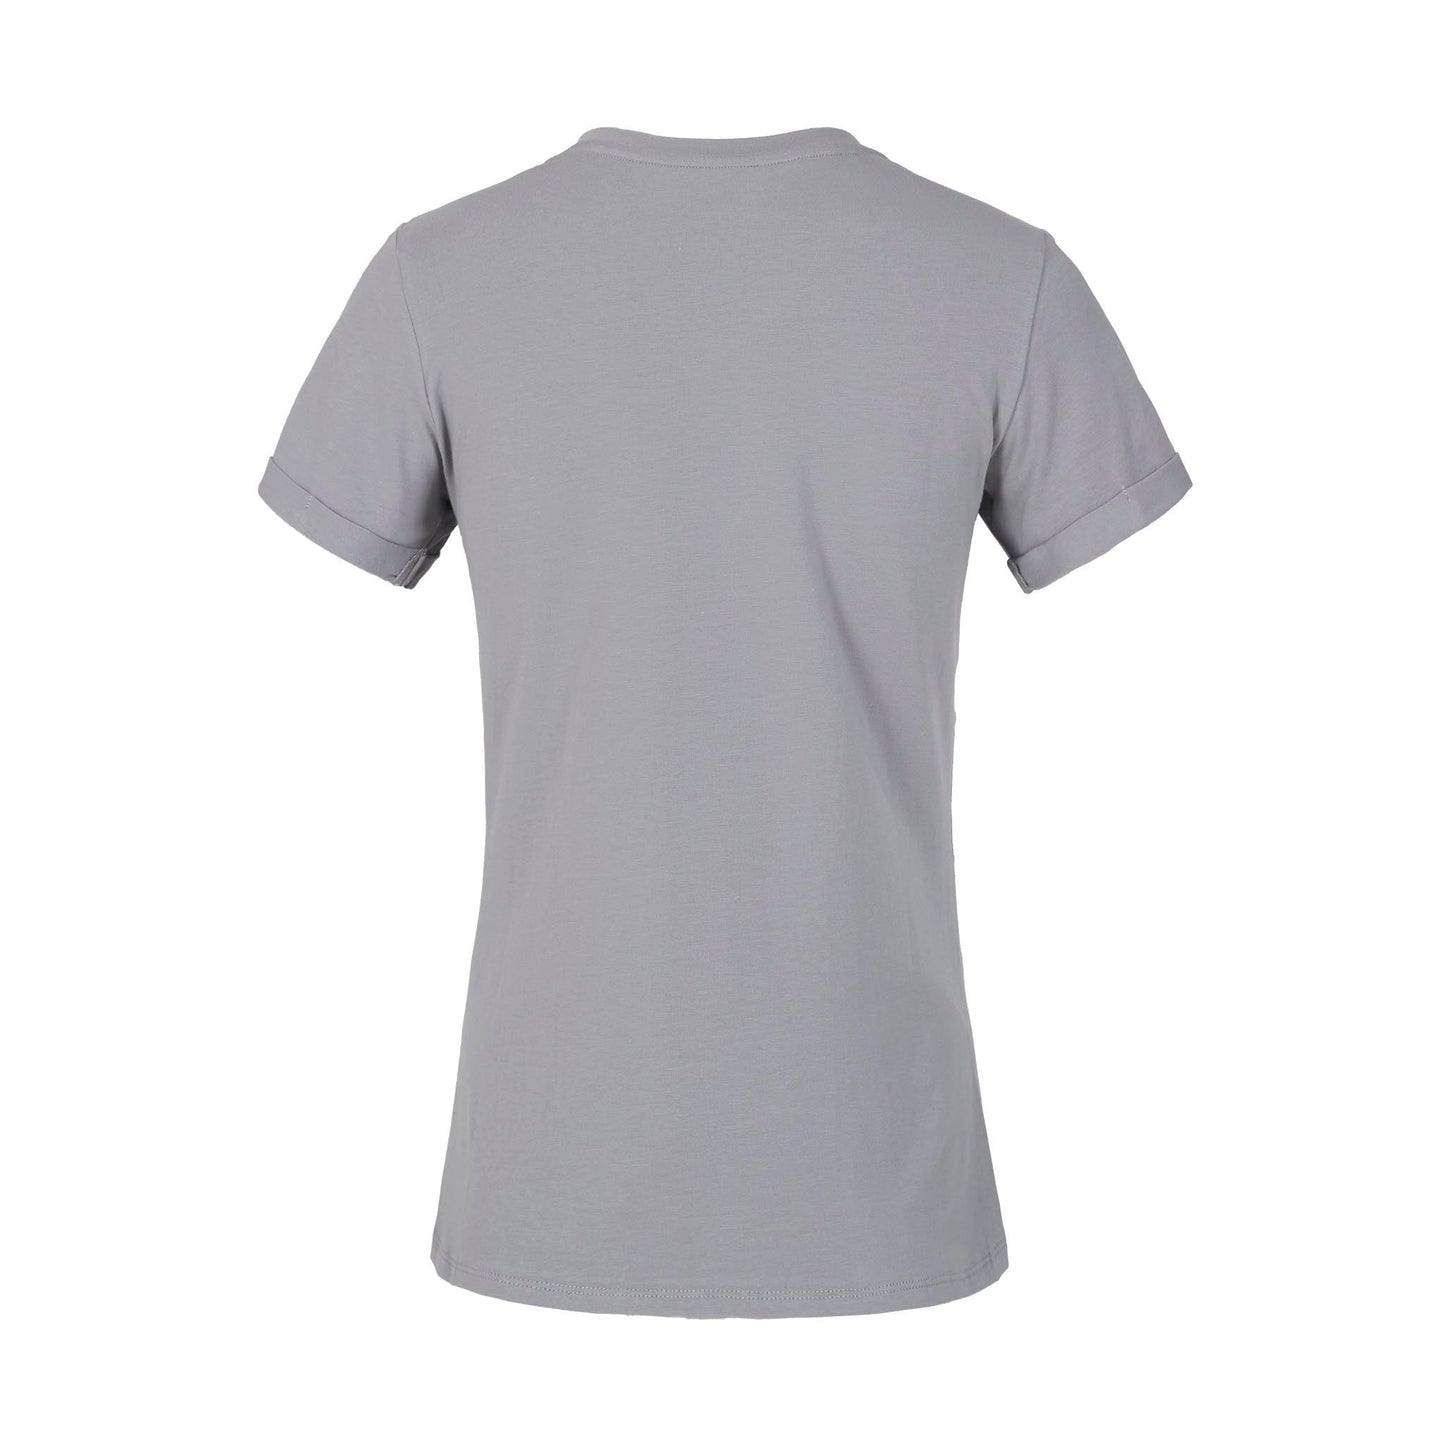 Kingsland Damen V-Neck T-shirt